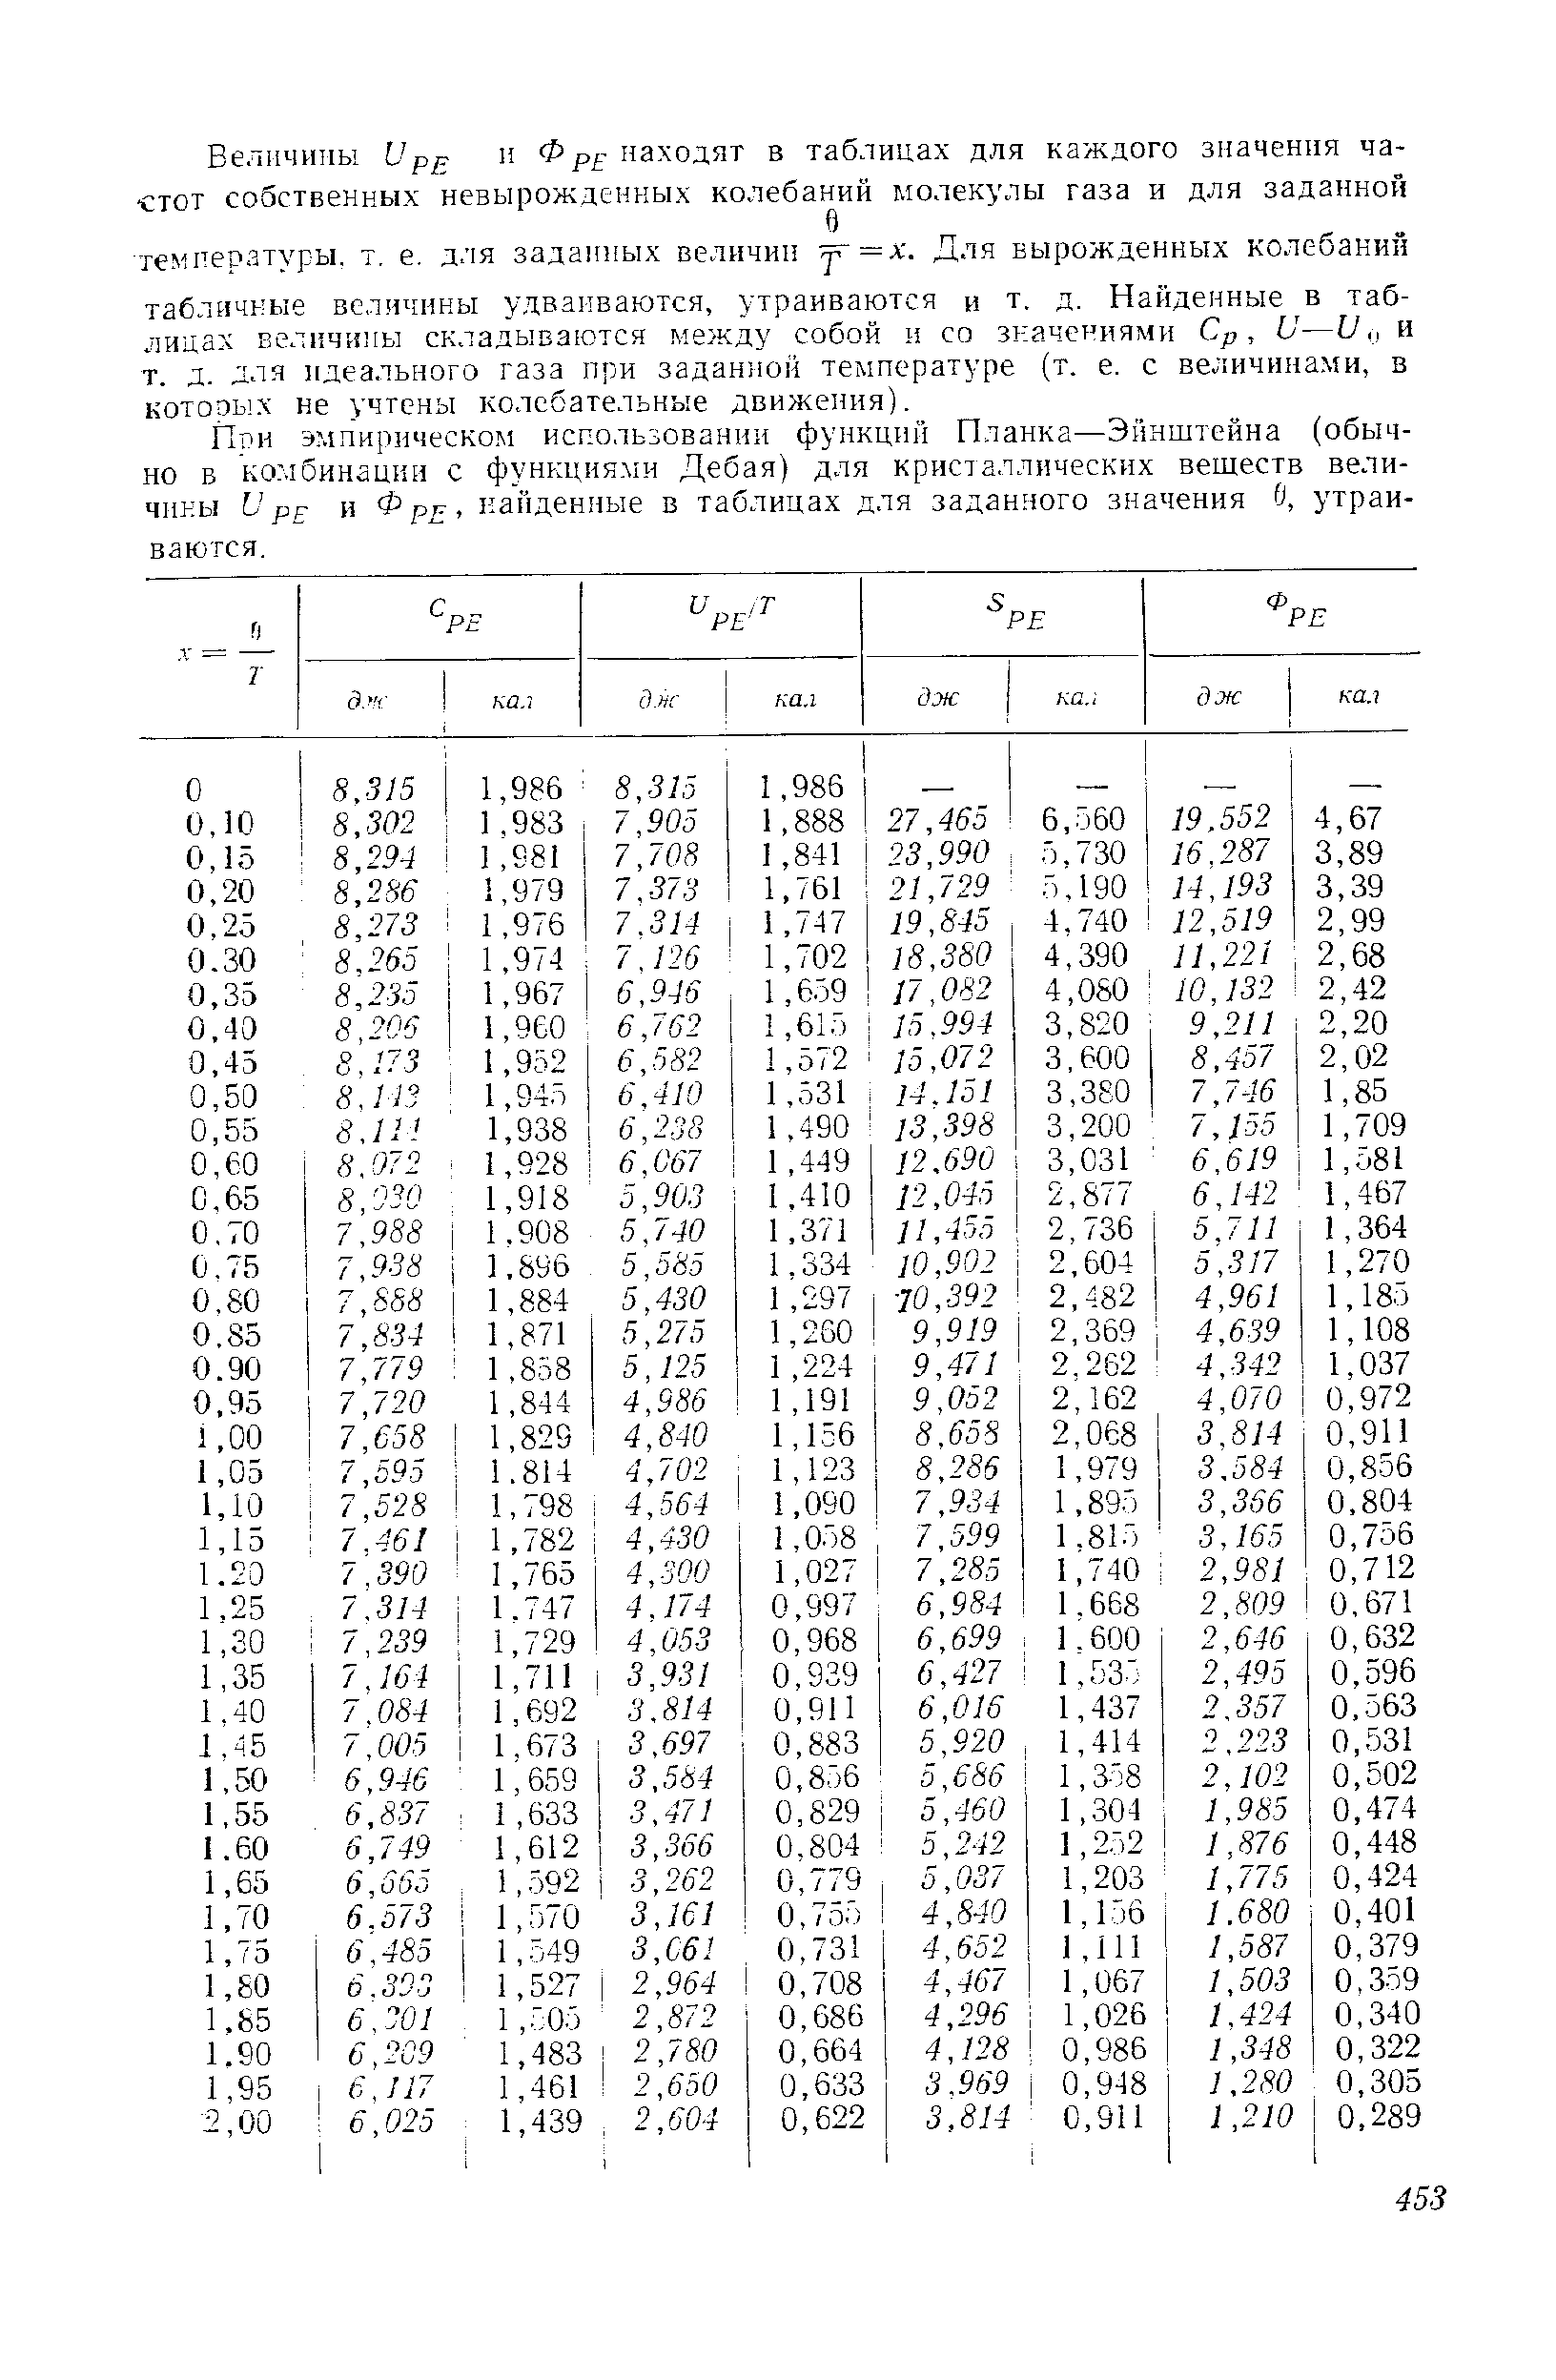 При эмпирическом использовании функций Планка—Эйнштейна (обычно в комбинации с функция.ми Дебая) для кристаллических вешеств величины V рр и Ф рг, найденные в таблицах для заданного значения Й, утраиваются.
